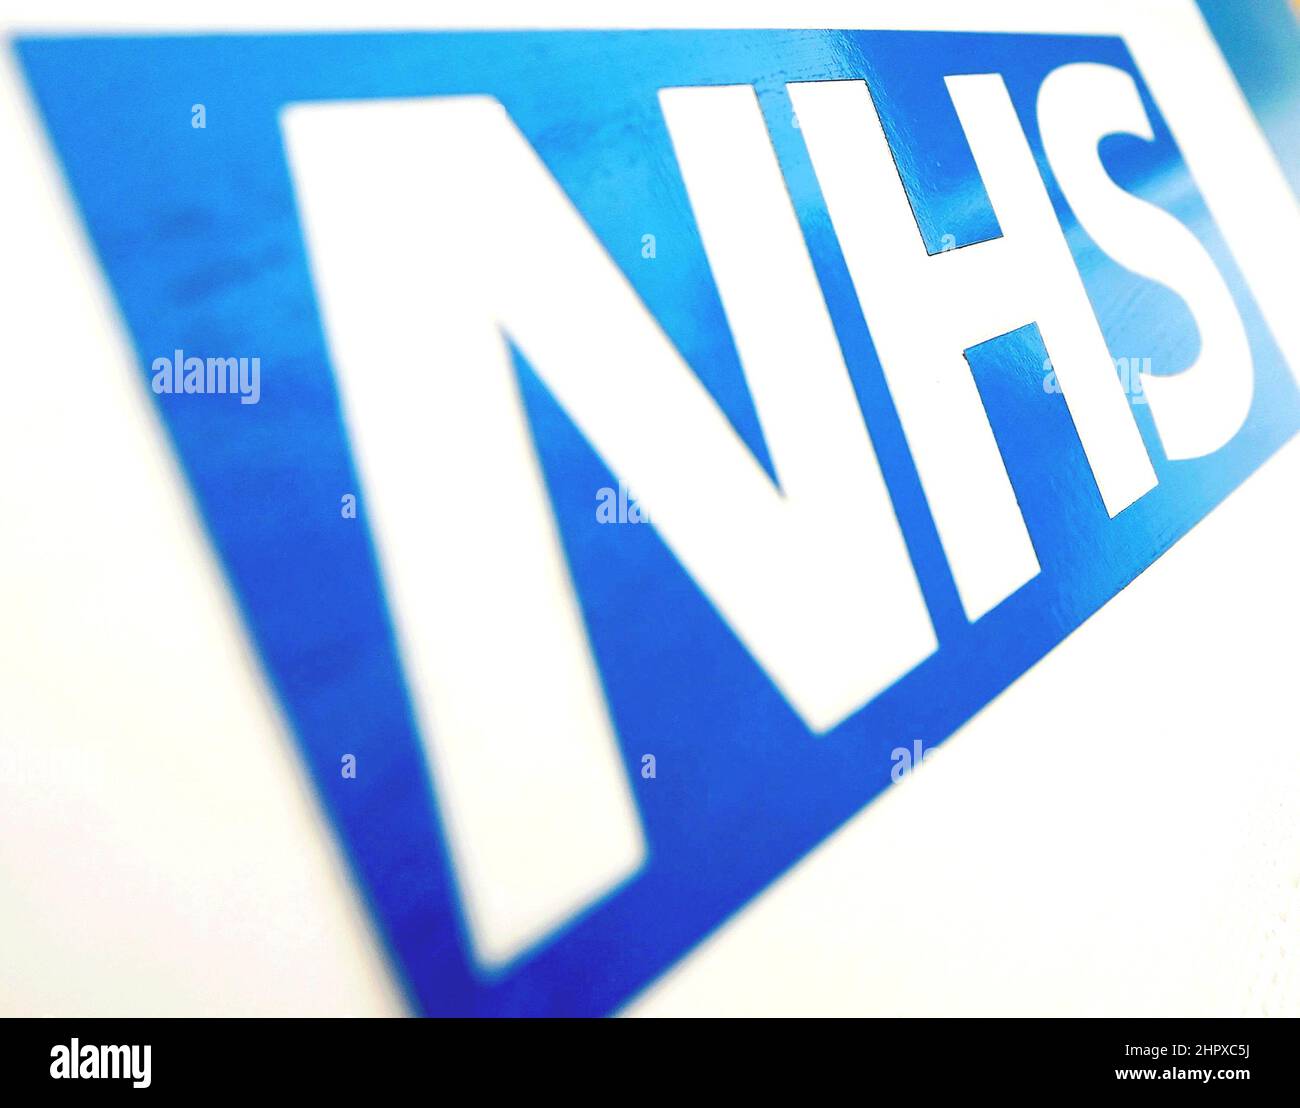 Foto vom 16/11/21 des NHS-Logos, da der schottische National Health Service unter starkem Druck steht, „nicht finanziell tragfähig“ ist und reformiert werden muss, sagte der Abschlussprüfer. Stockfoto